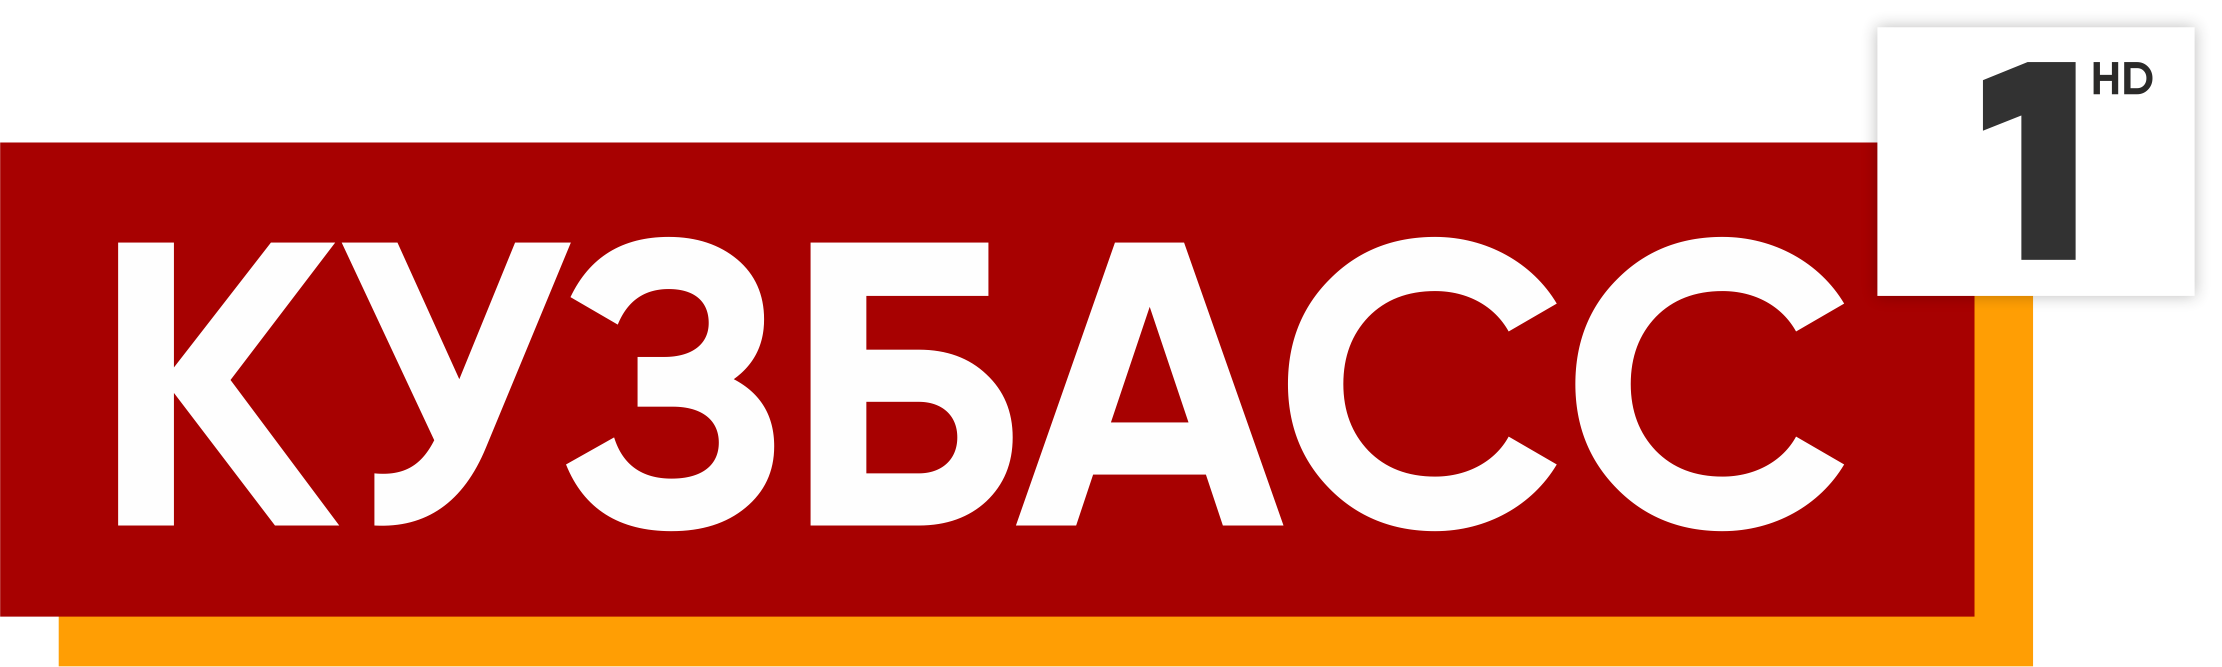 Телеканал Кузбасс 1. Кузбасс первый логотип. Логотипы телеканалов. Кузбасс 1 TV logo.